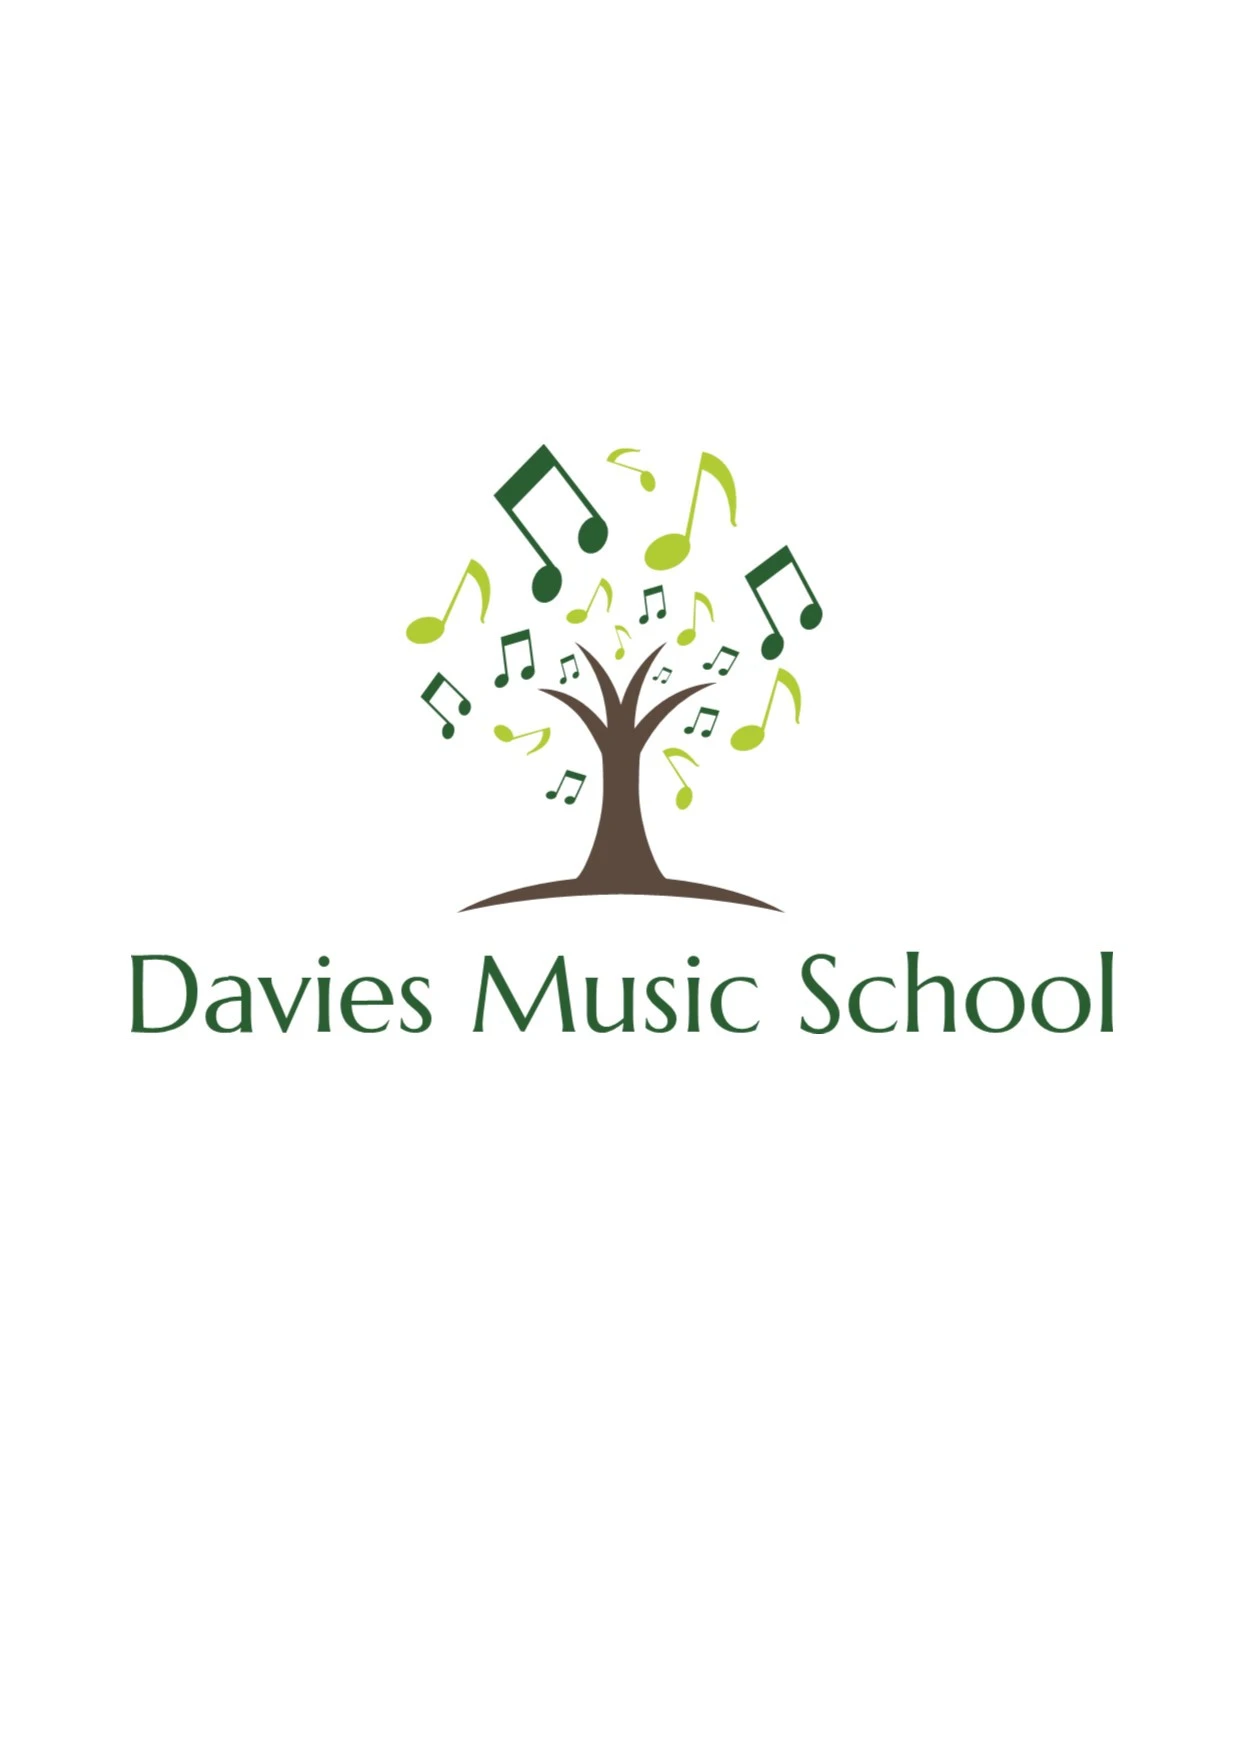 Davies Music School